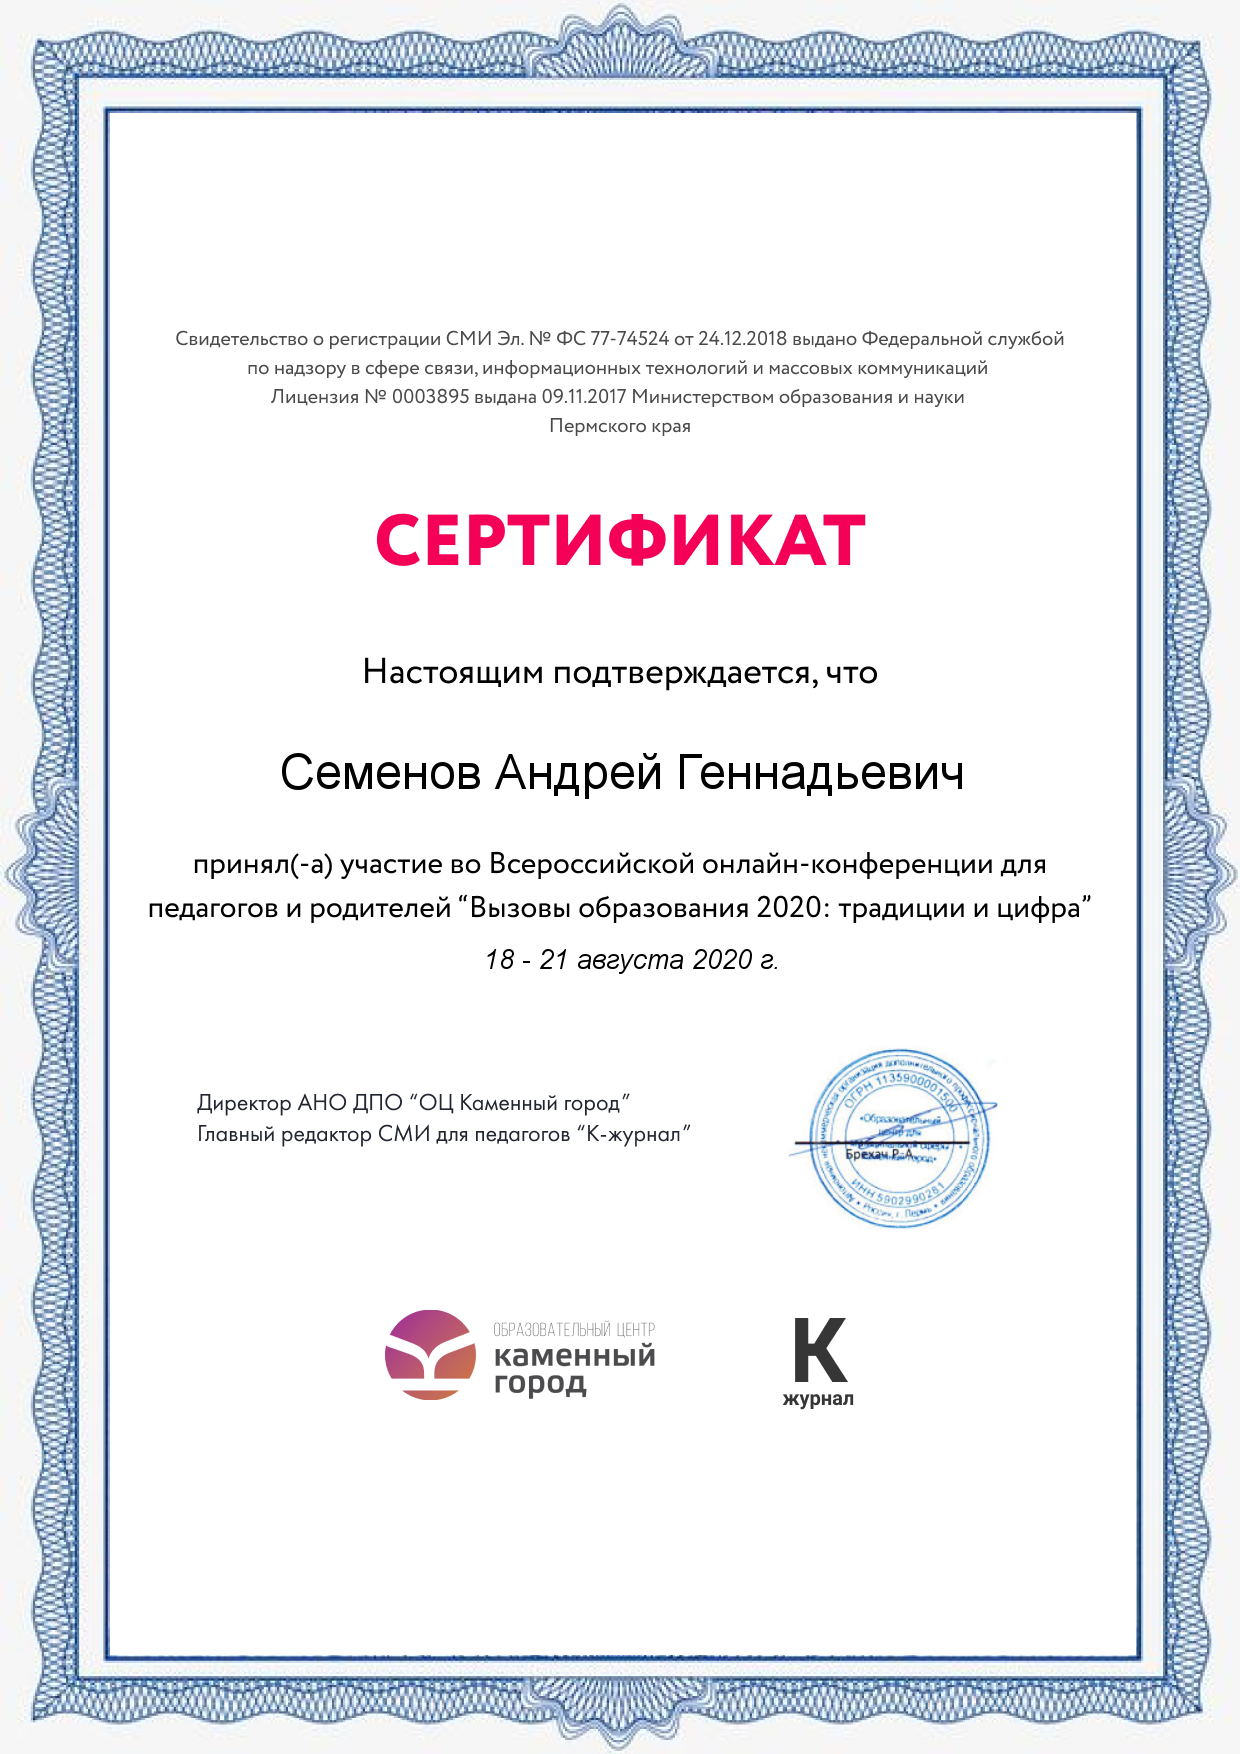 Сертификат конференции